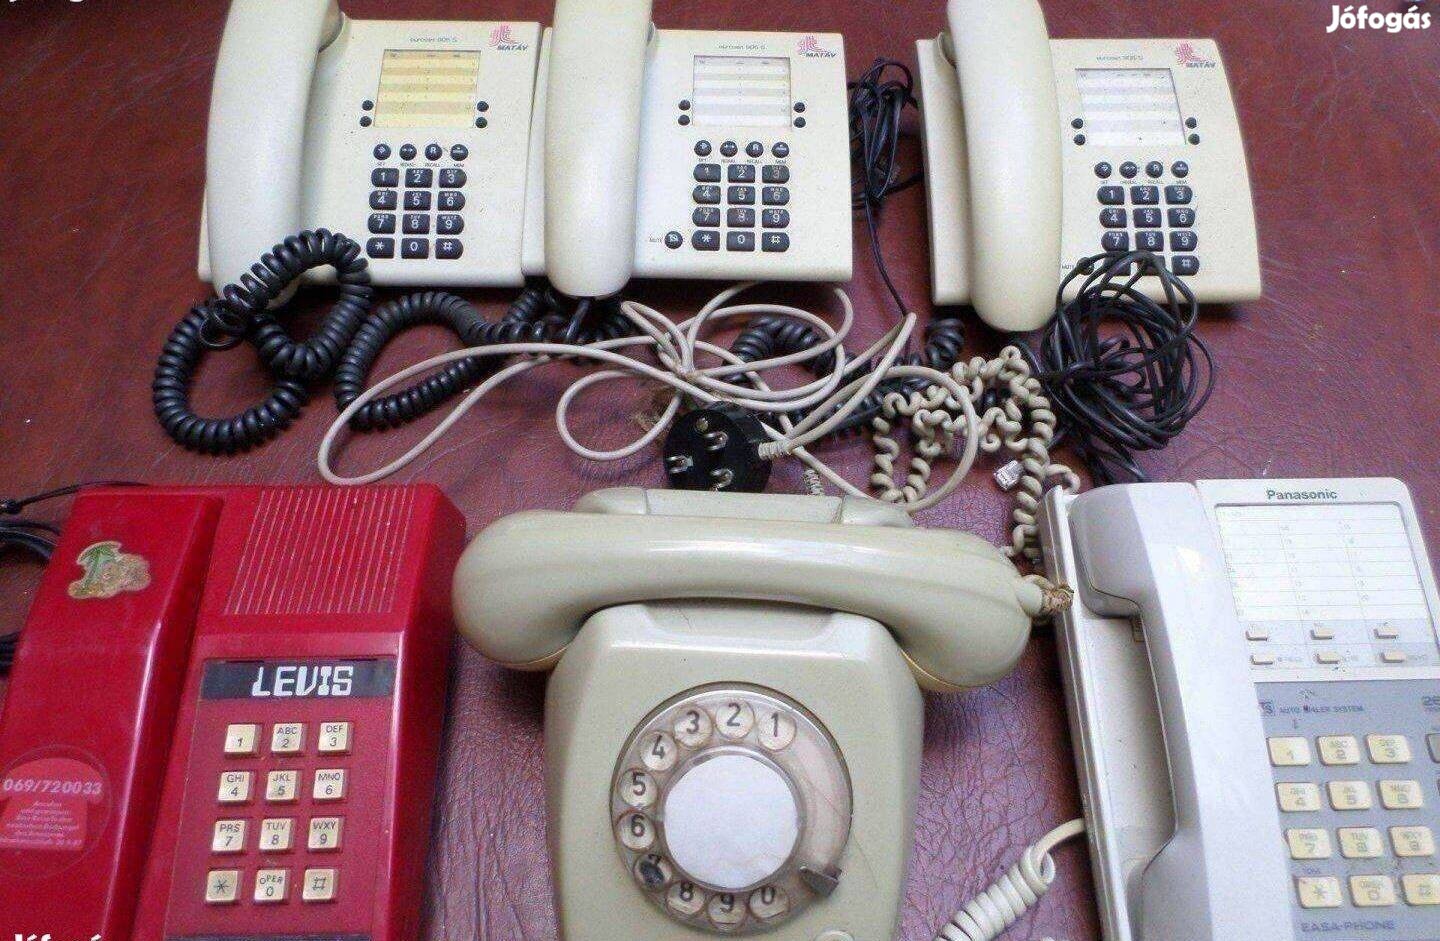 Vezetékes telefon készülék többféle retro